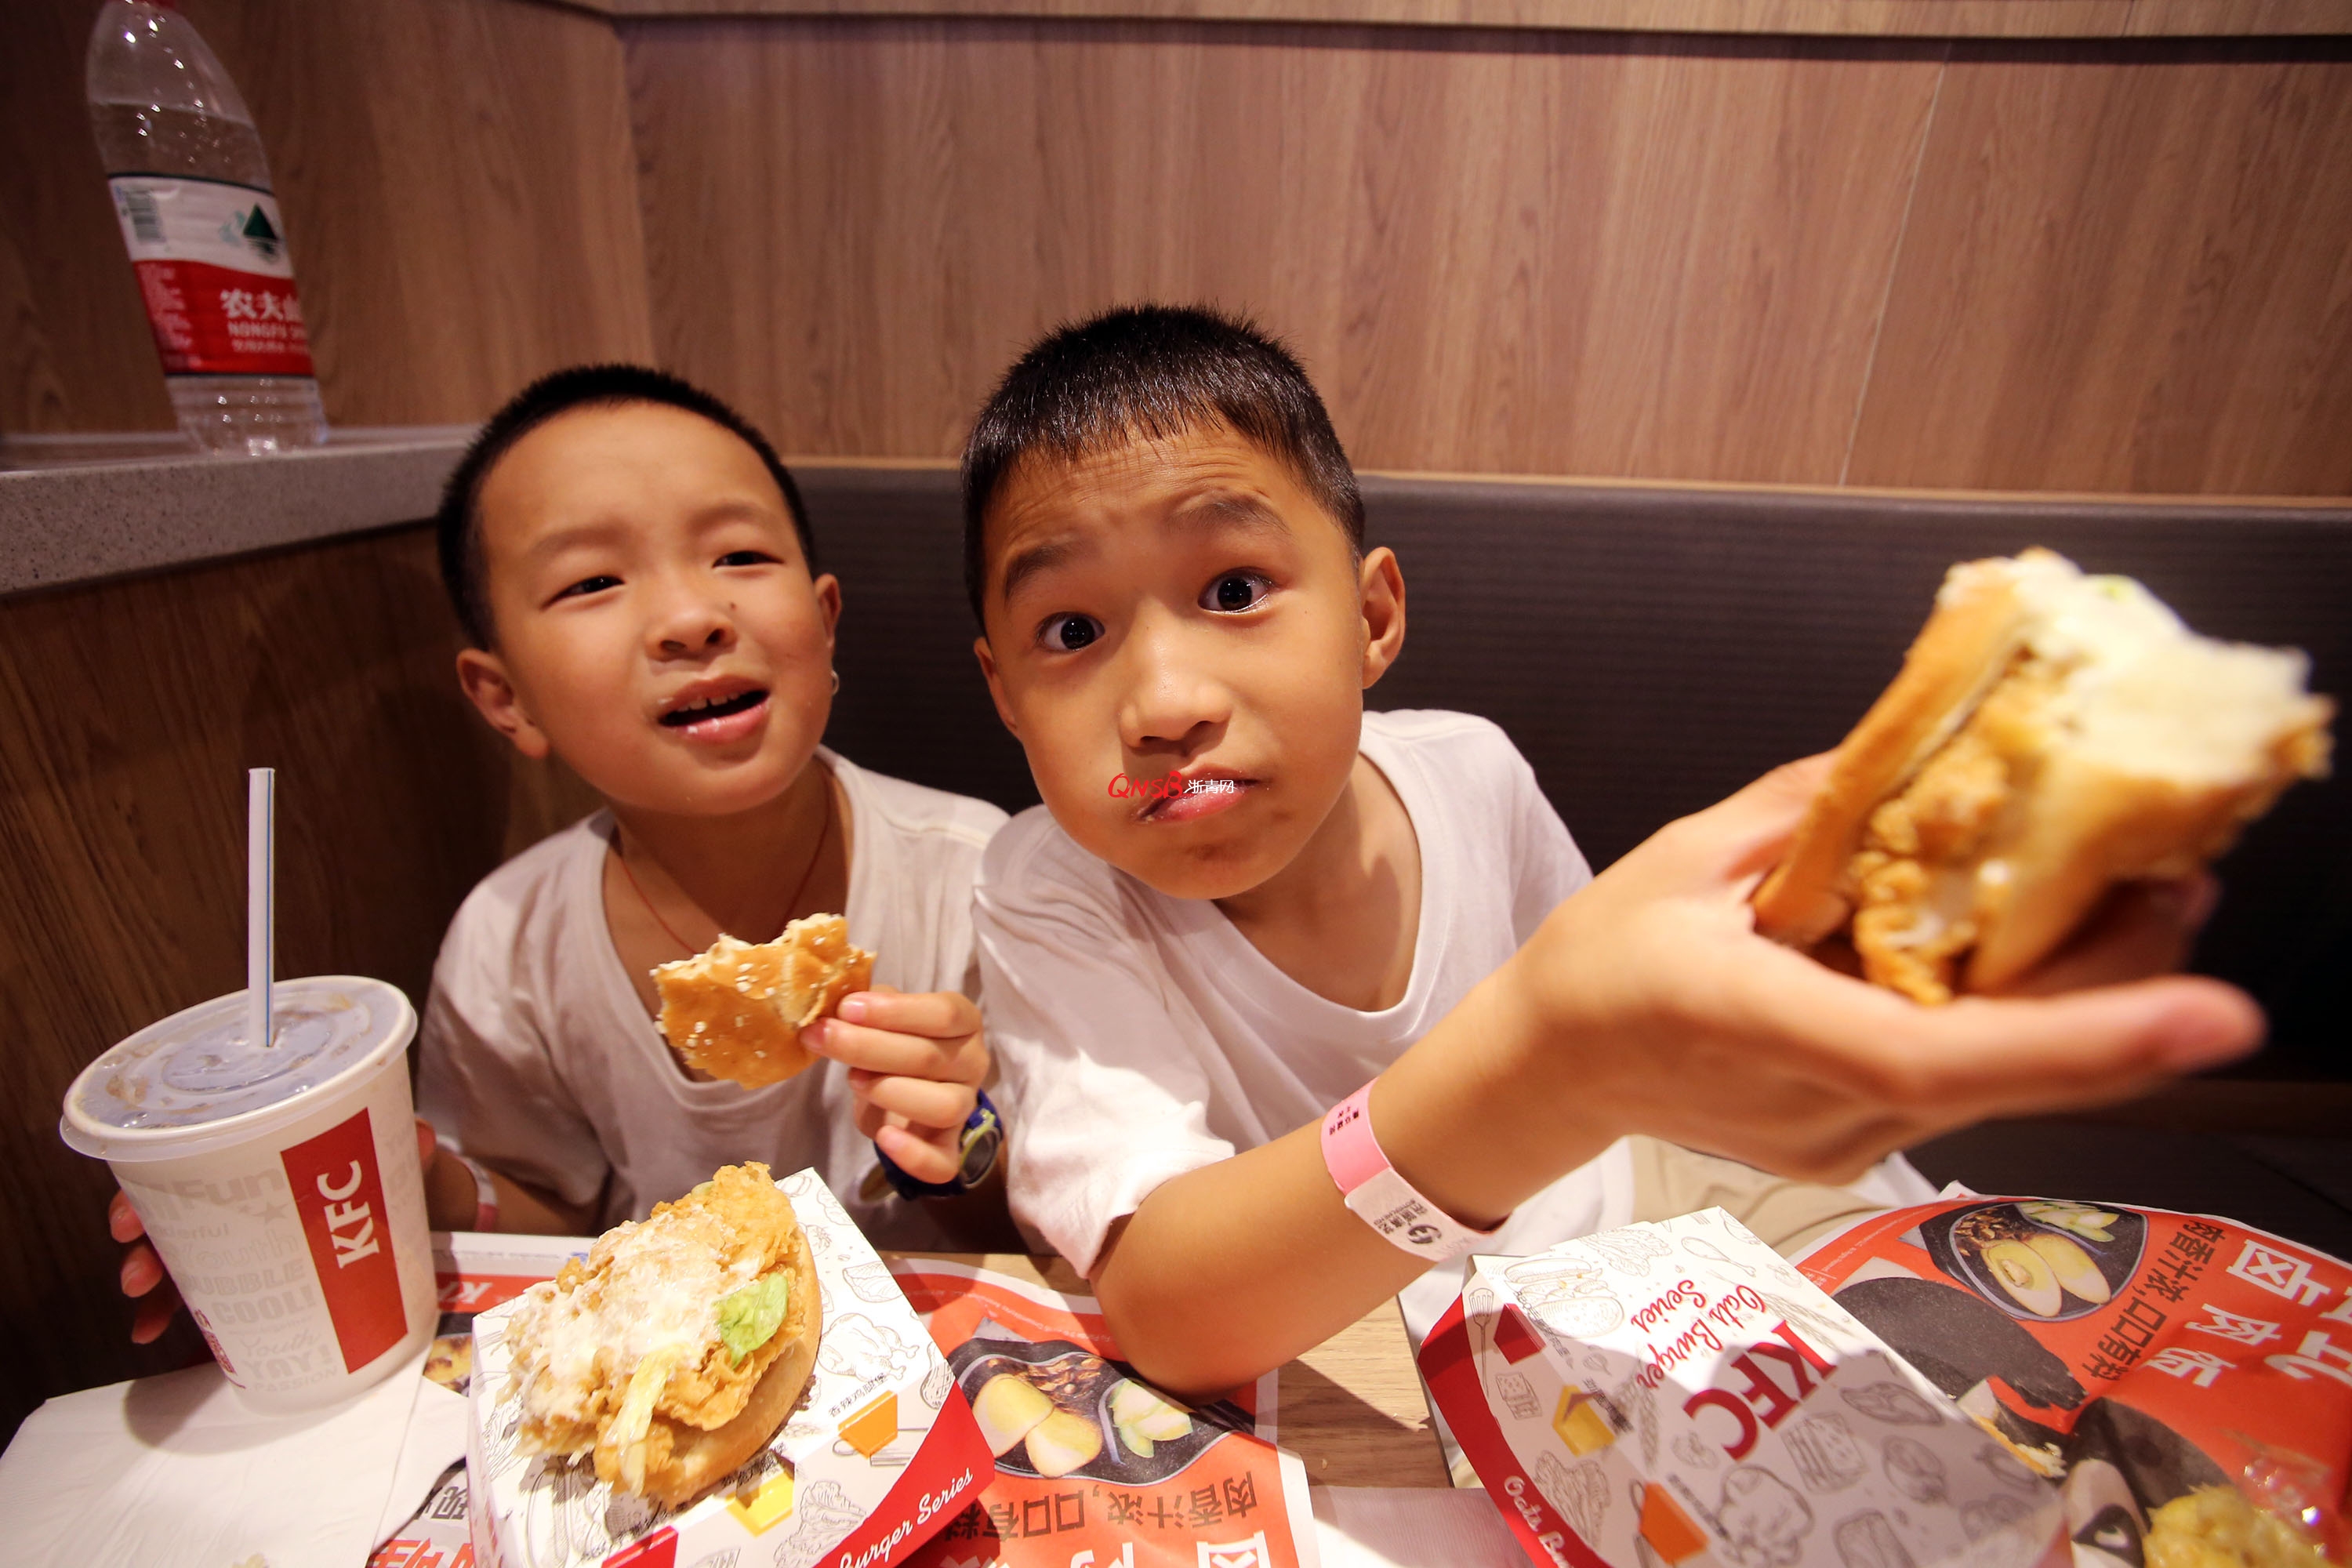 洋快餐压制下蓬勃发展的中国式快餐店铺“飞好吃沈包子”